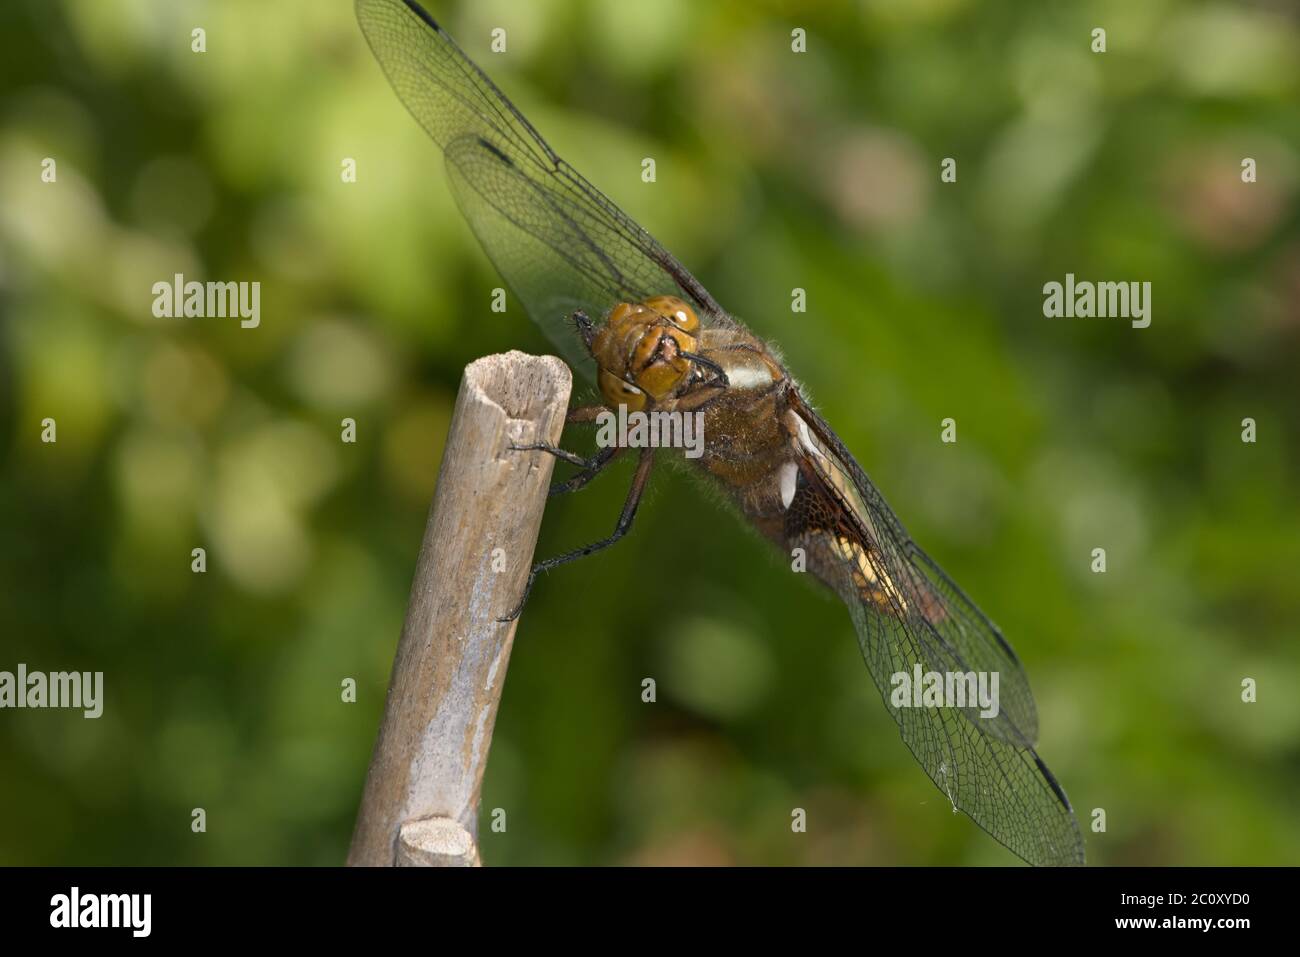 La dragonfly de la caser à corps large femelle de l'ordre Odonata regarde directement la caméra comme elle grod son visage. Fond vert doux naturel. Banque D'Images